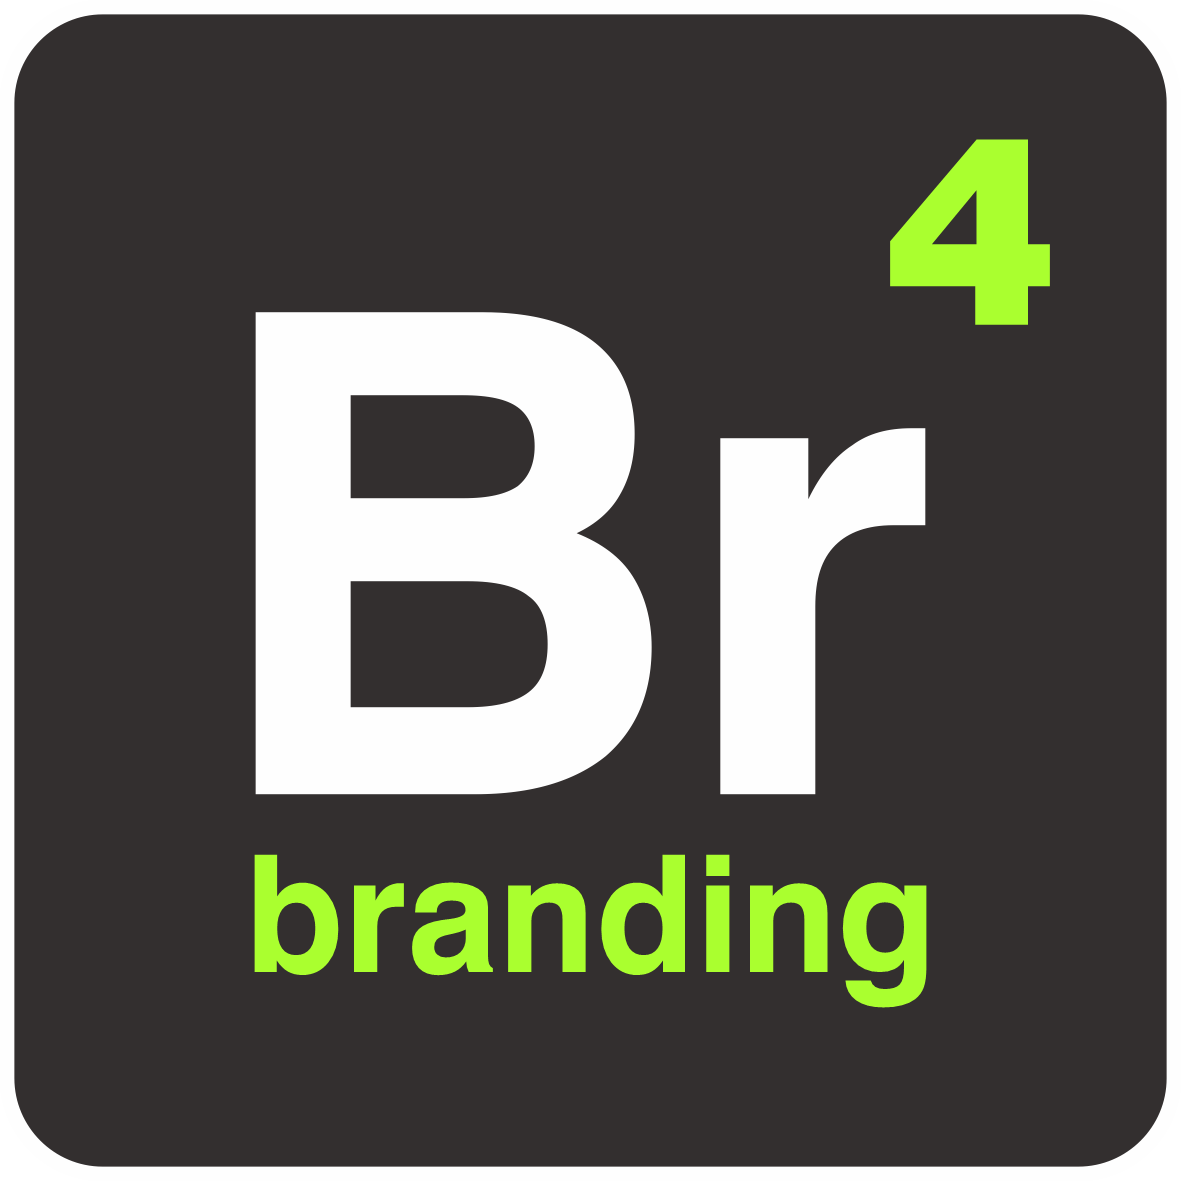 BR4 Branding